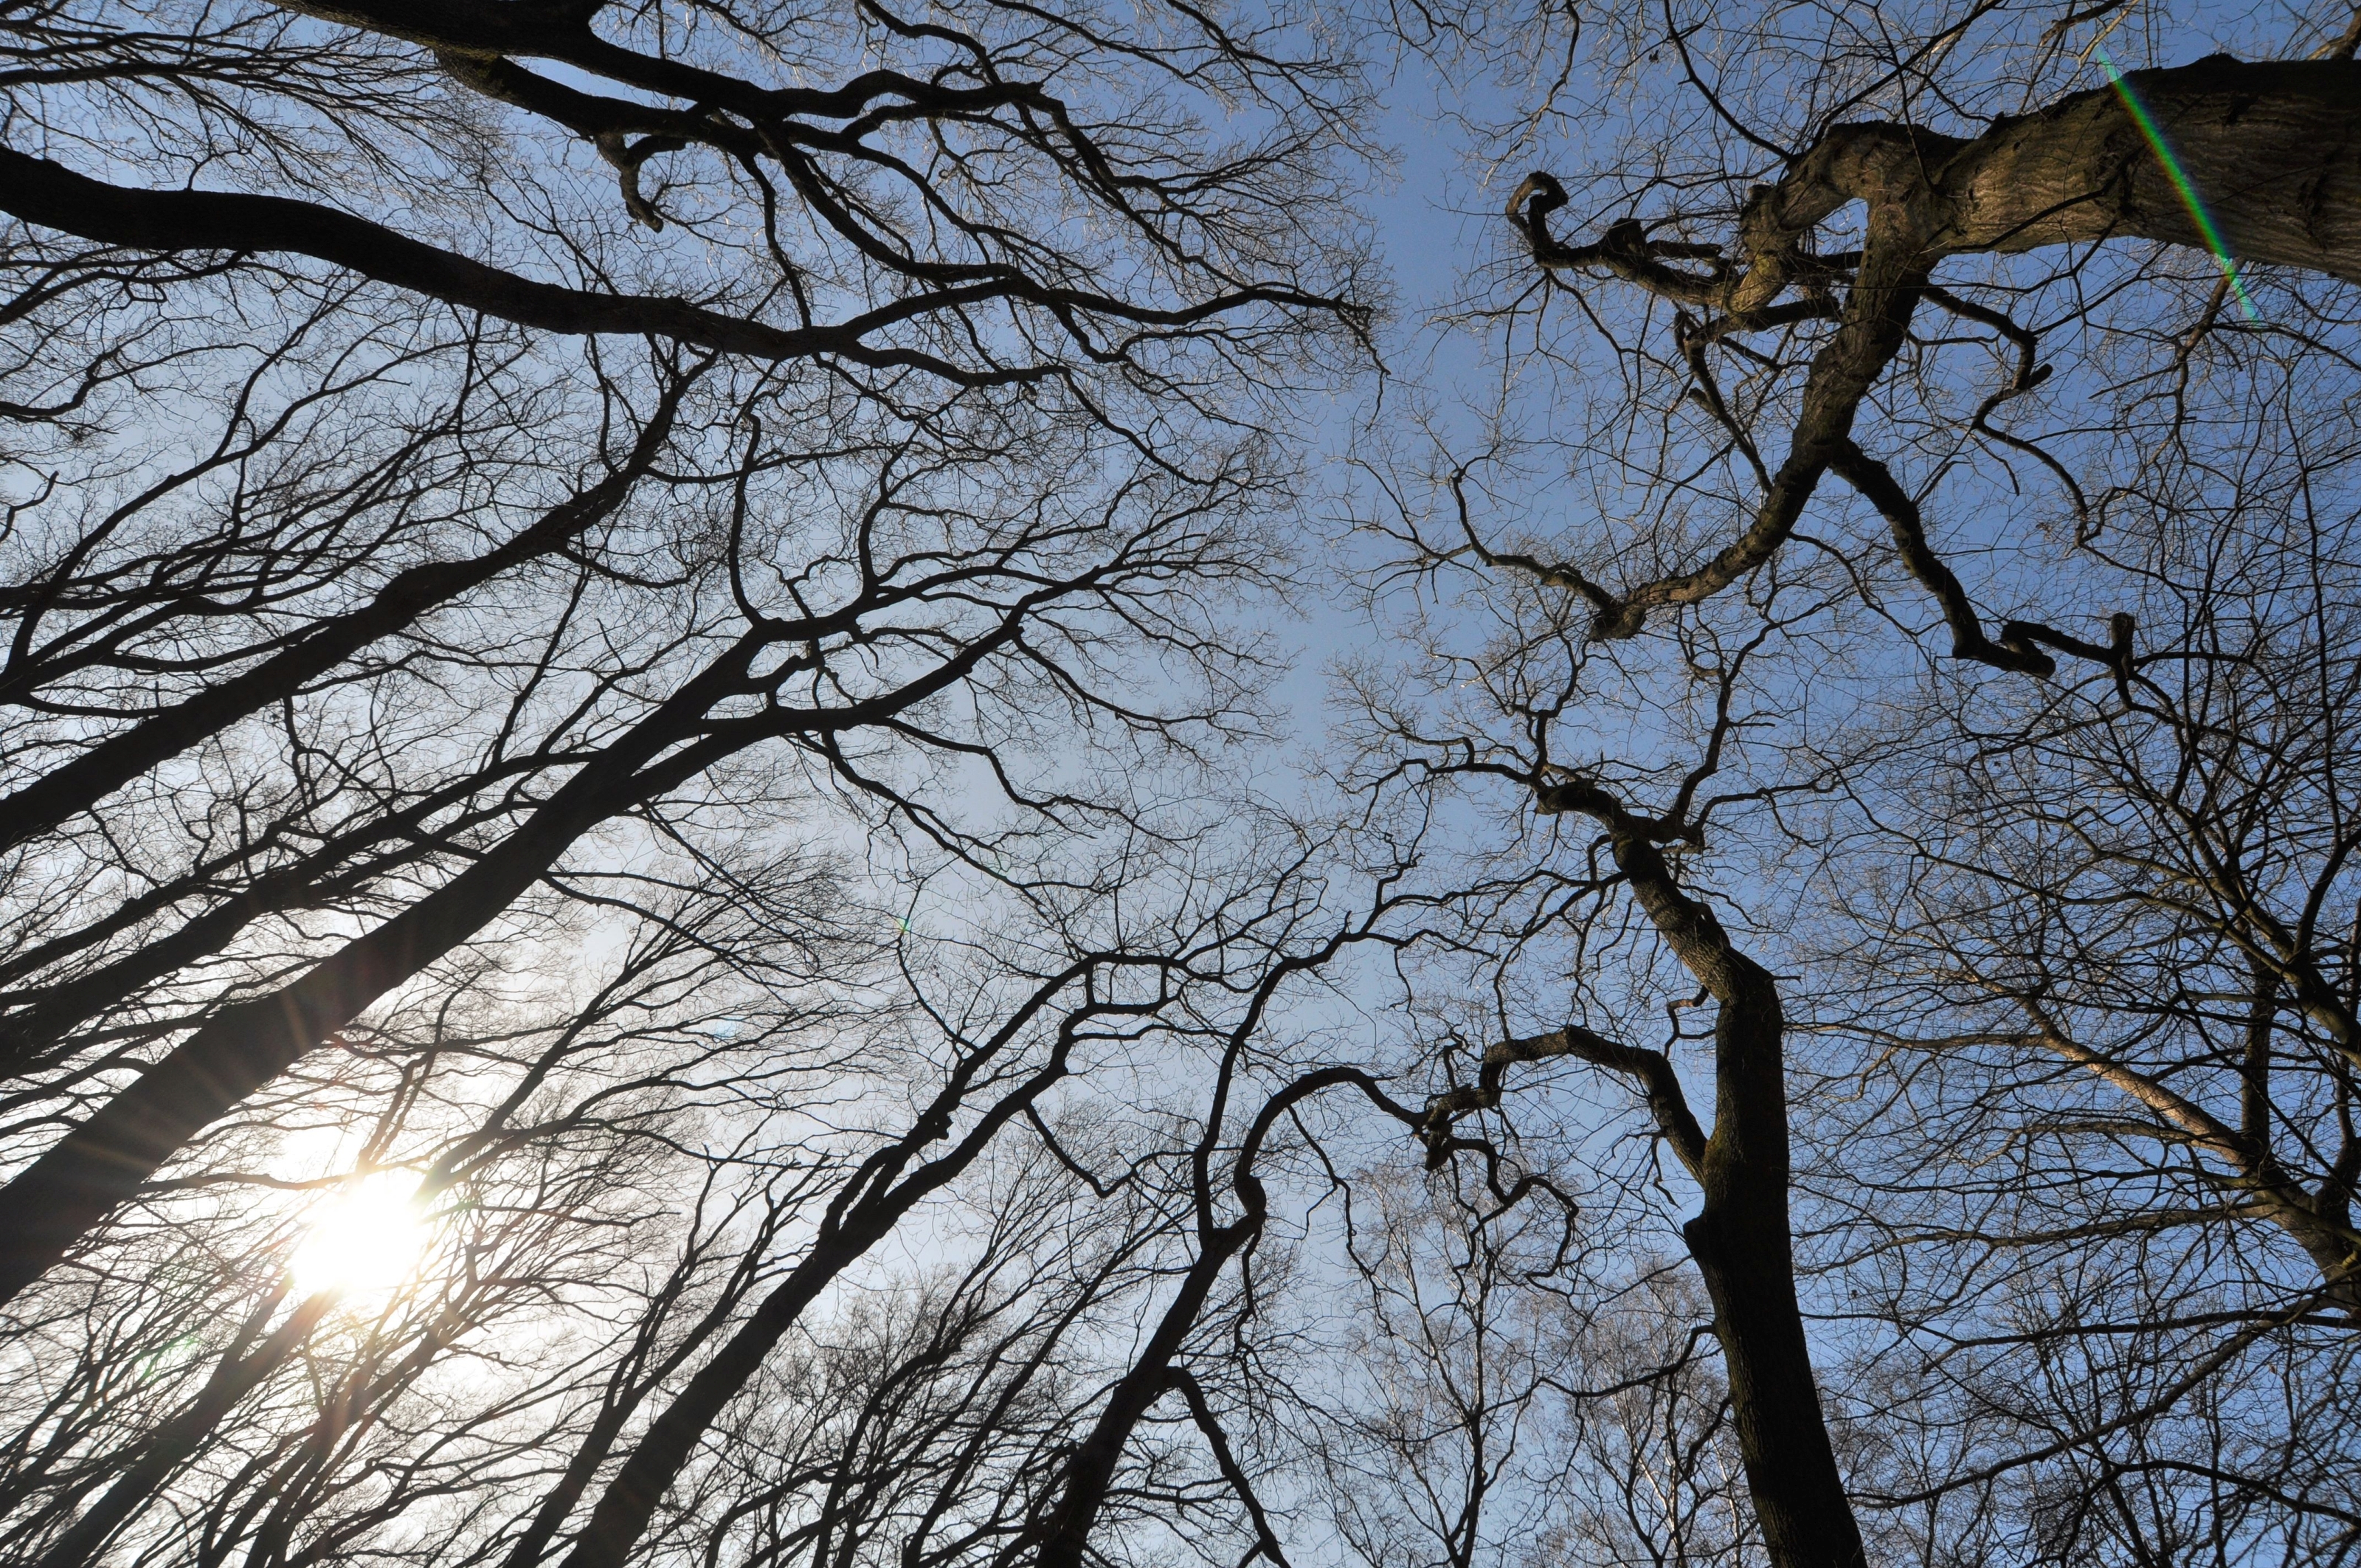 Das Bild zeigt einen Wald im Winter - die Bäume tragen keine Blätter. Es wurde von unten in Richtung des blauen Himmels fotografiert.